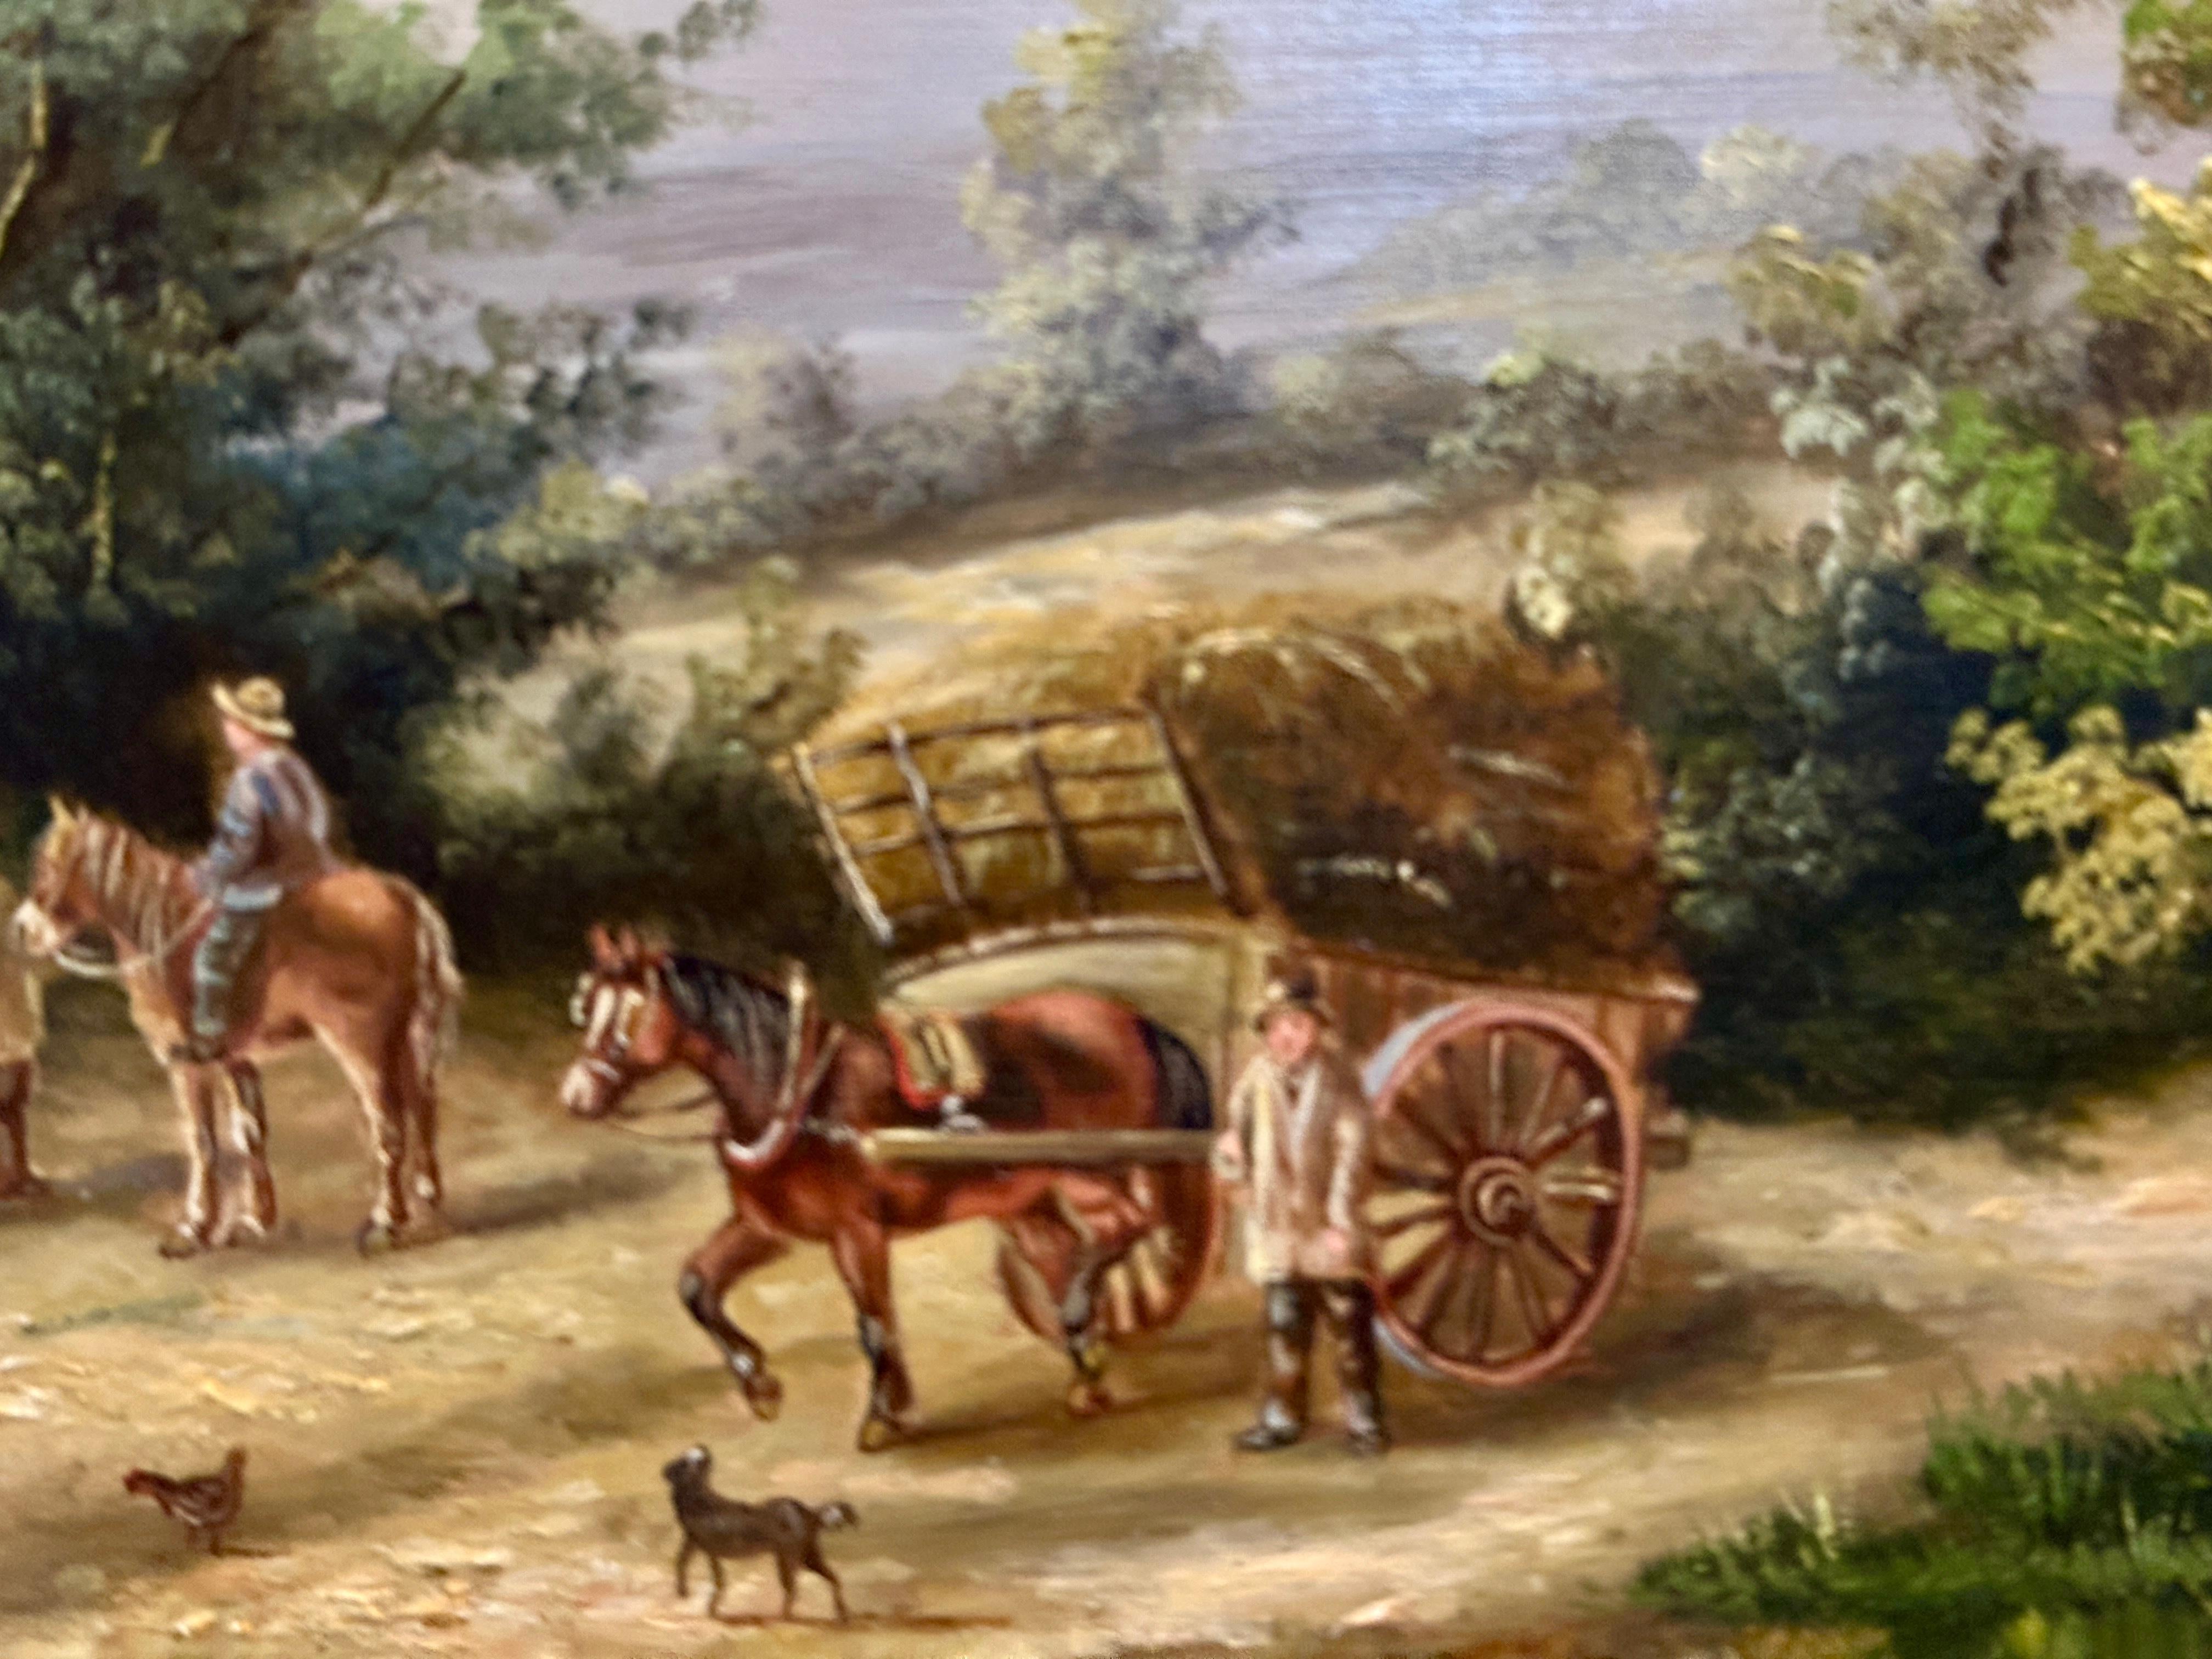 Georgine LARA

Englische Dorflandschaft

Ein Gemälde von Georgina Lara, das eine englische Dorfszene aus dem 19. Jahrhundert darstellt, bietet eine charmante und stimmungsvolle Darstellung einer vergangenen Epoche und fängt das Wesen des Landlebens